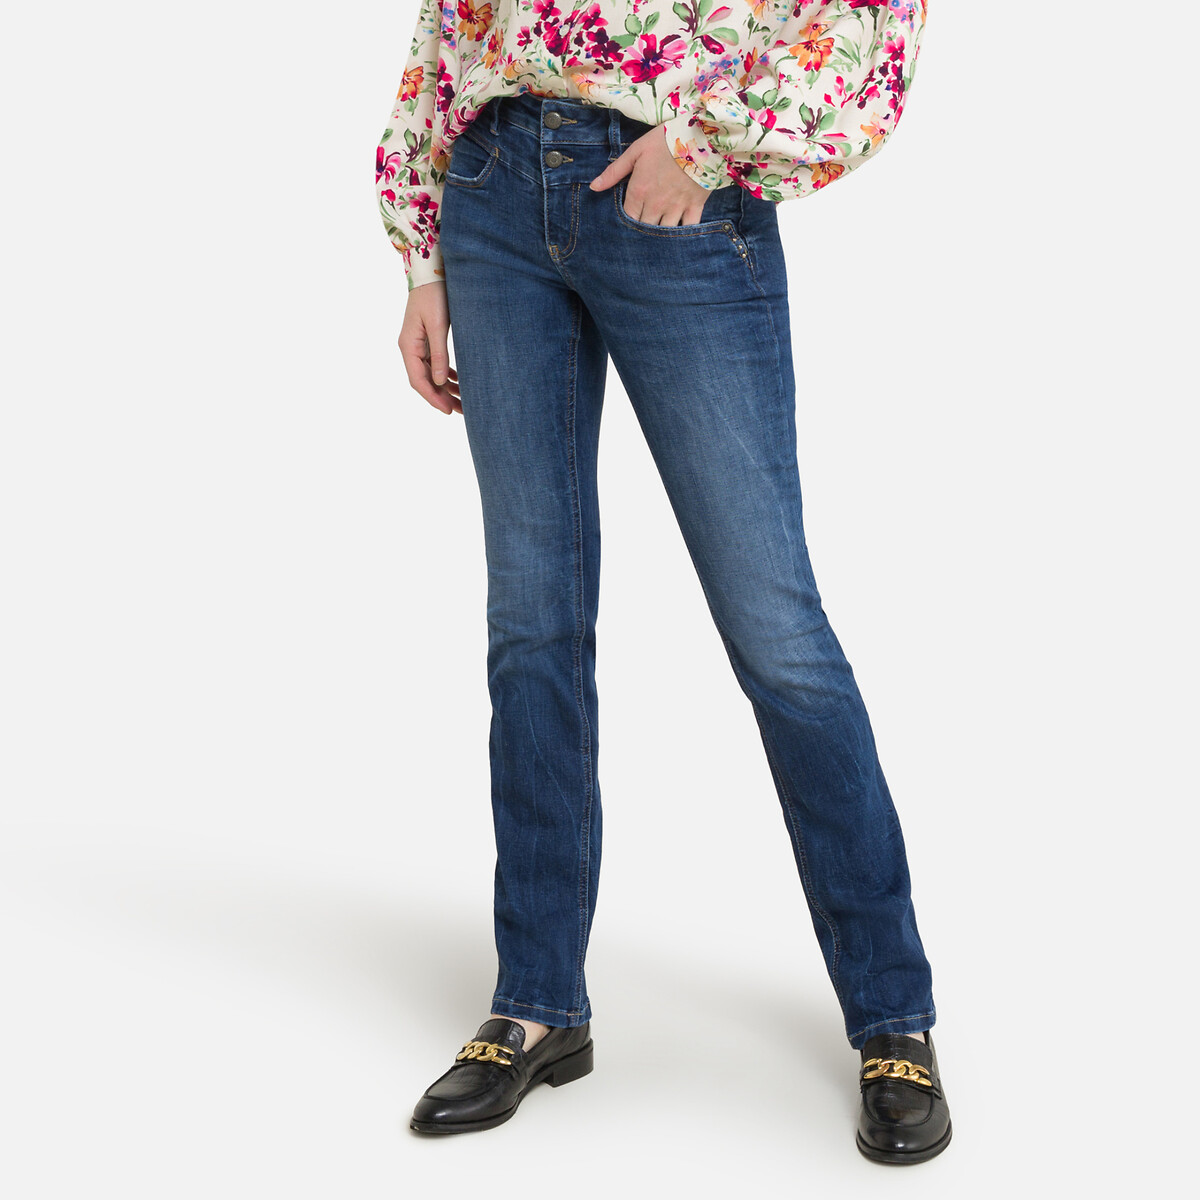 Regular-jeans madie s-sdm, halbhoher | La Porter Redoute Freeman bund T. fever